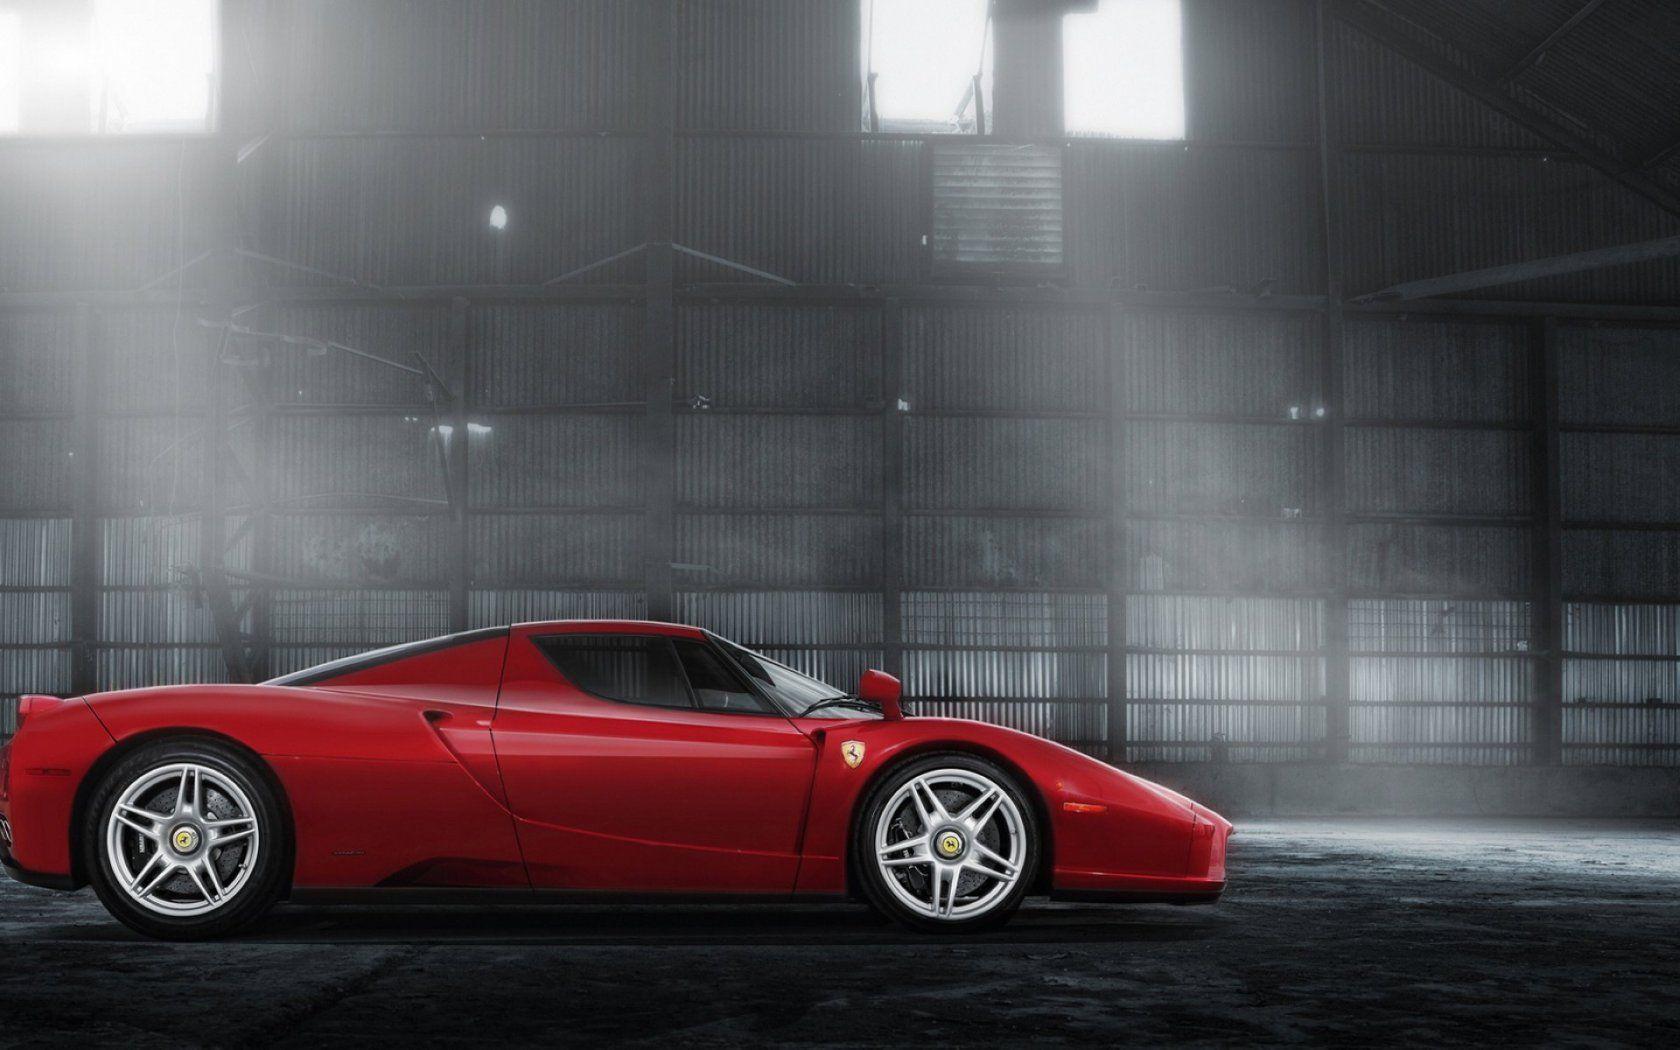 Desktop Image of Ferrari Enzo. Ferrari Enzo Wallpaper